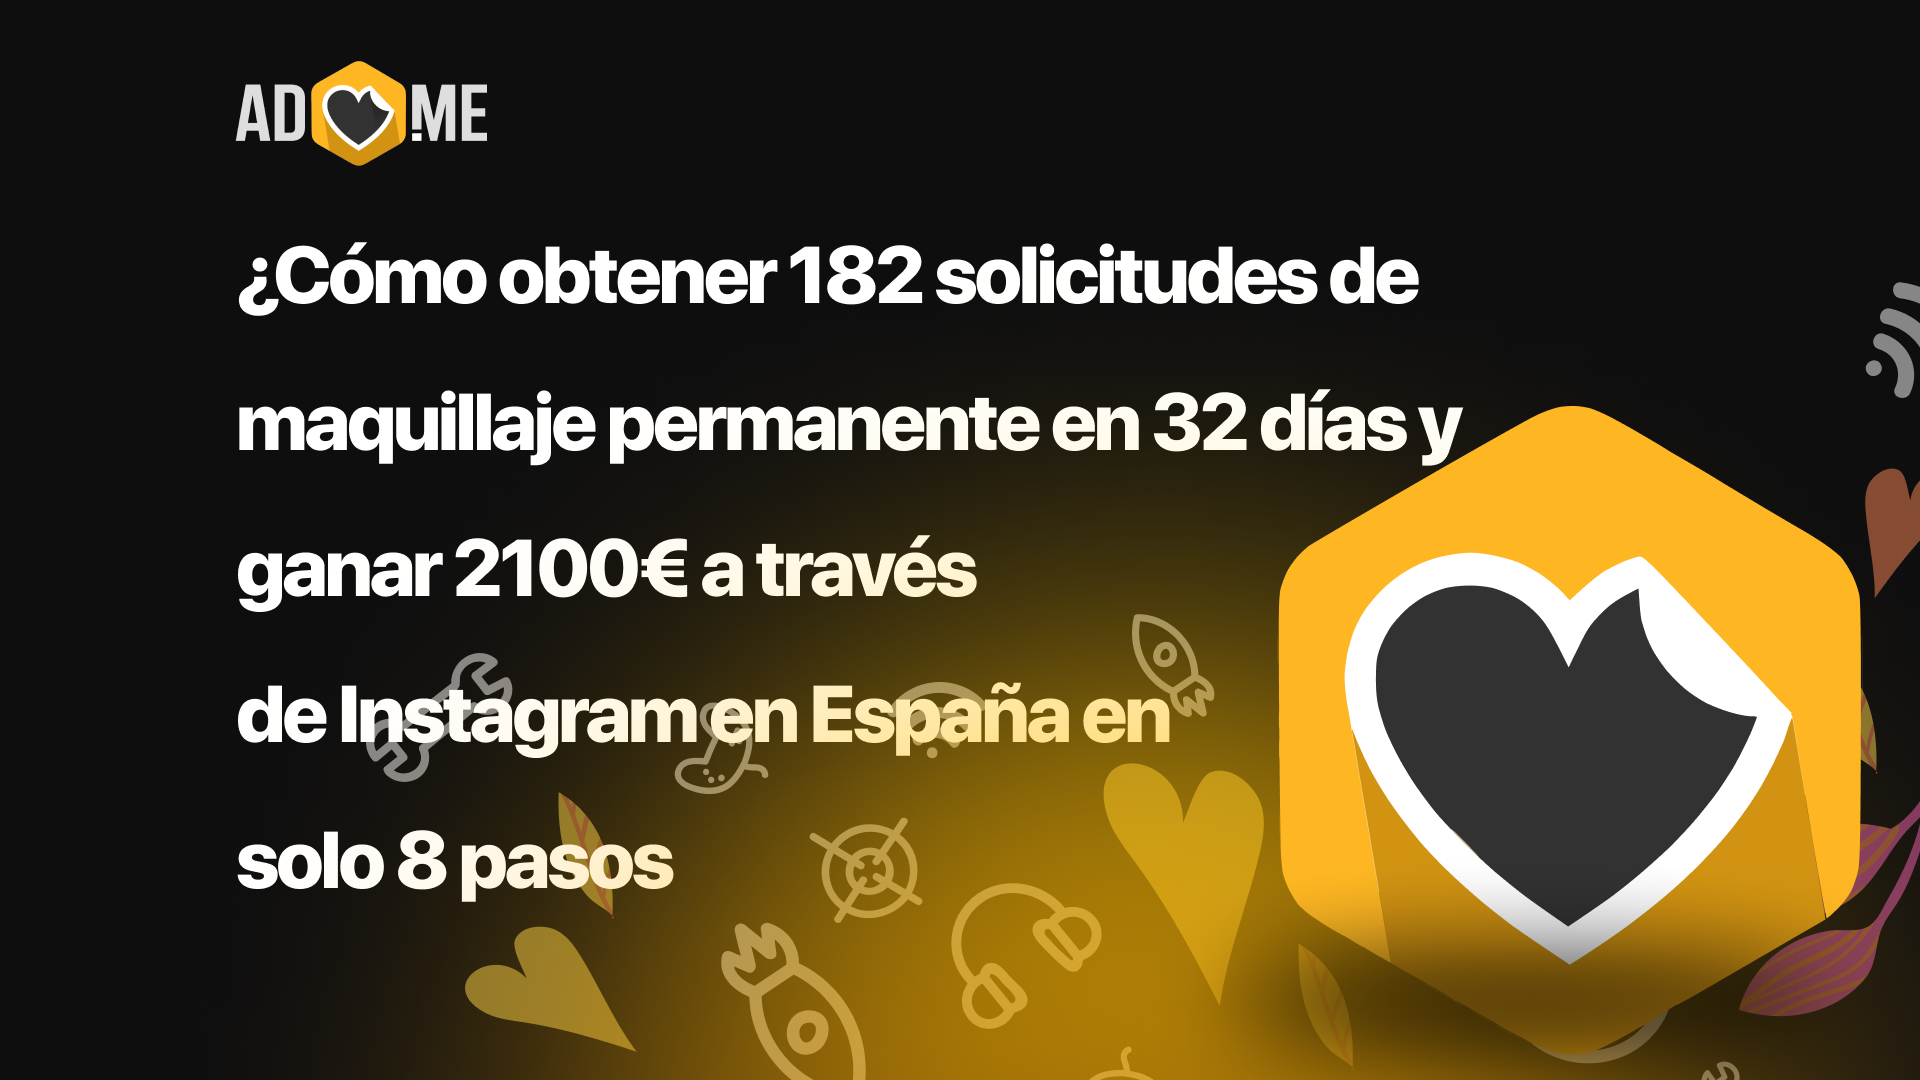 ¿Cómo obtener 182 solicitudes de maquillaje permanente en 32 días y ganar 2100€ a través de Instagram en España en solo 8 pasos?